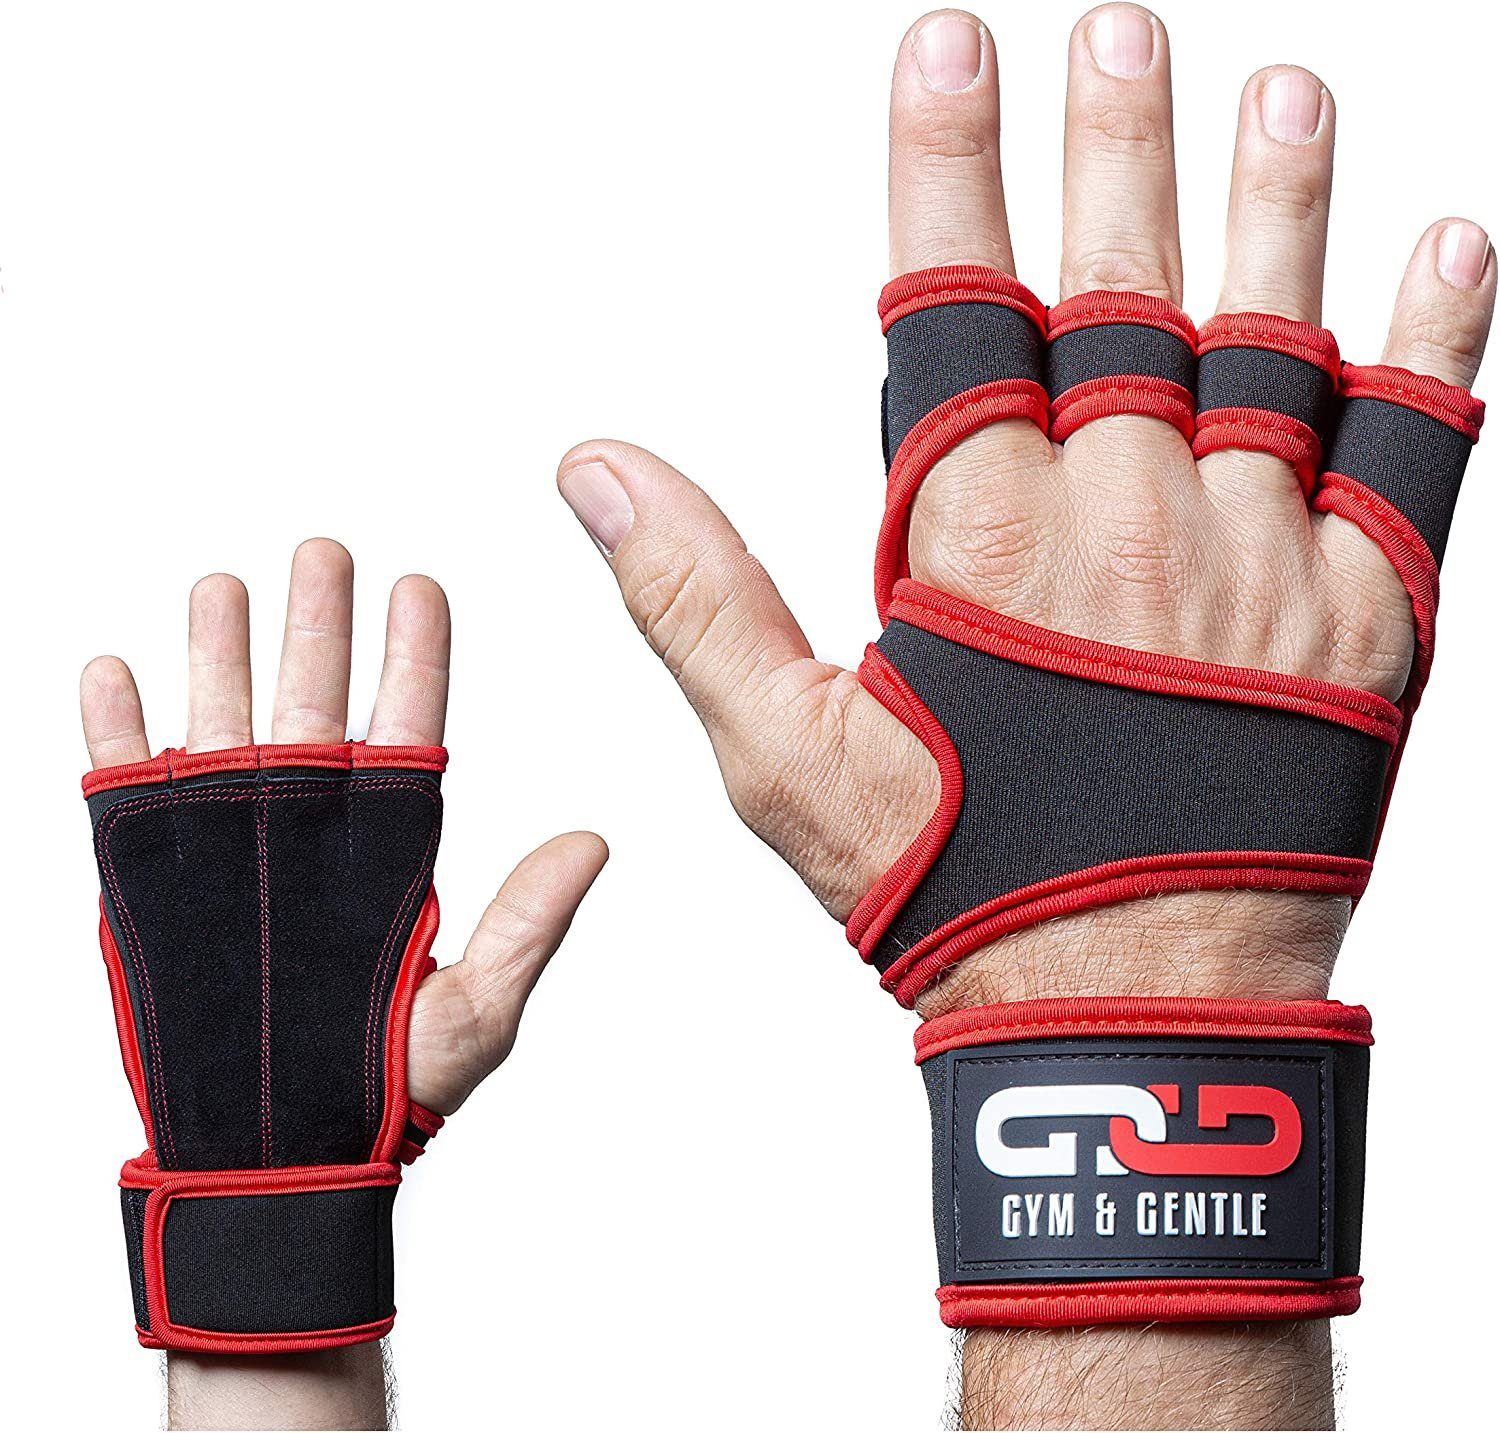 Gym & Gentle Multisporthandschuhe Fitnesshandschuhe mit Handgelenkstütze für Männer und Frauen geringes Gewicht rot